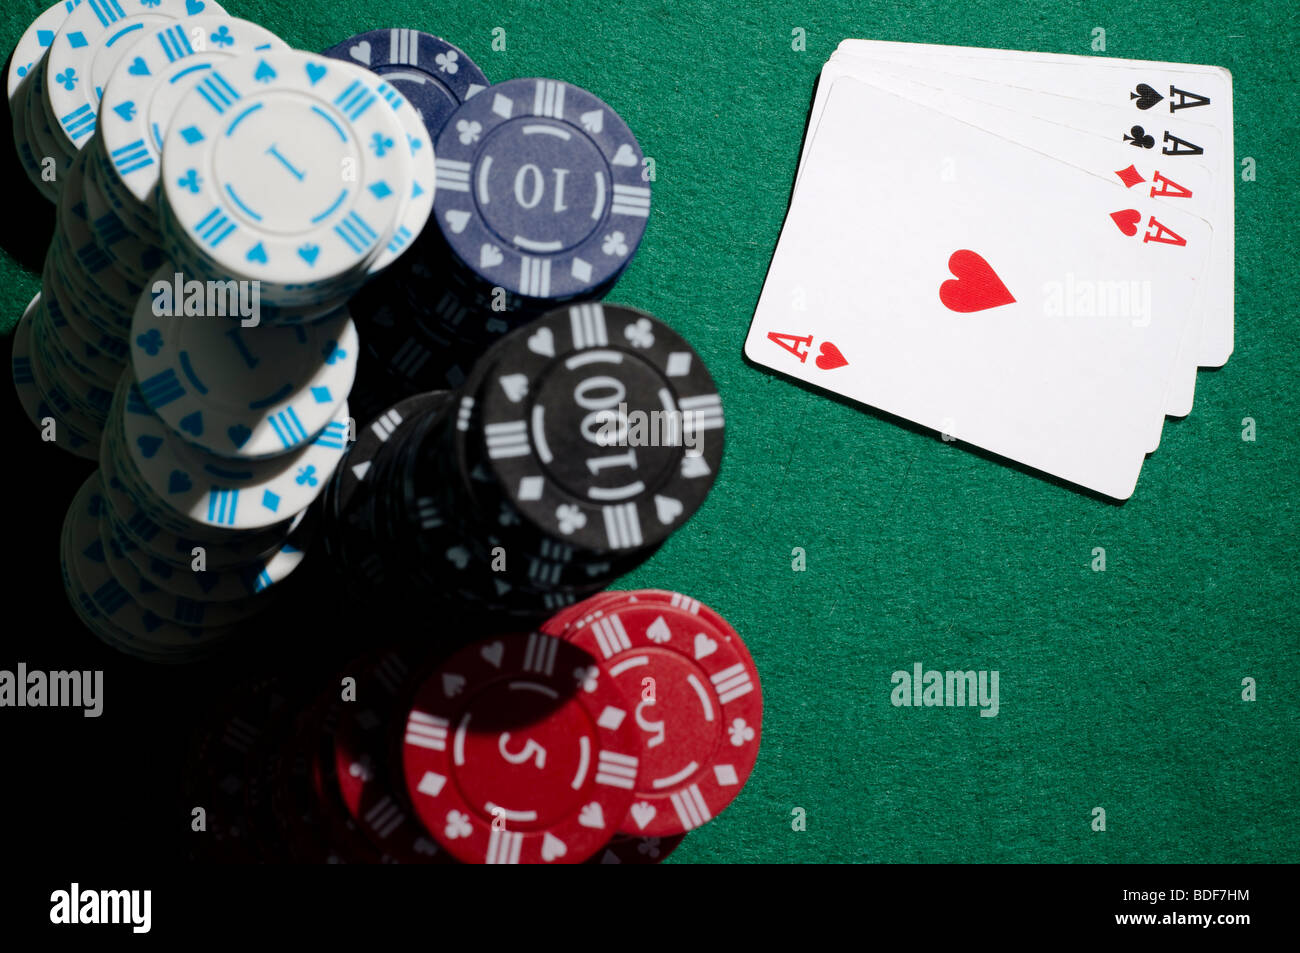 poker betfair download